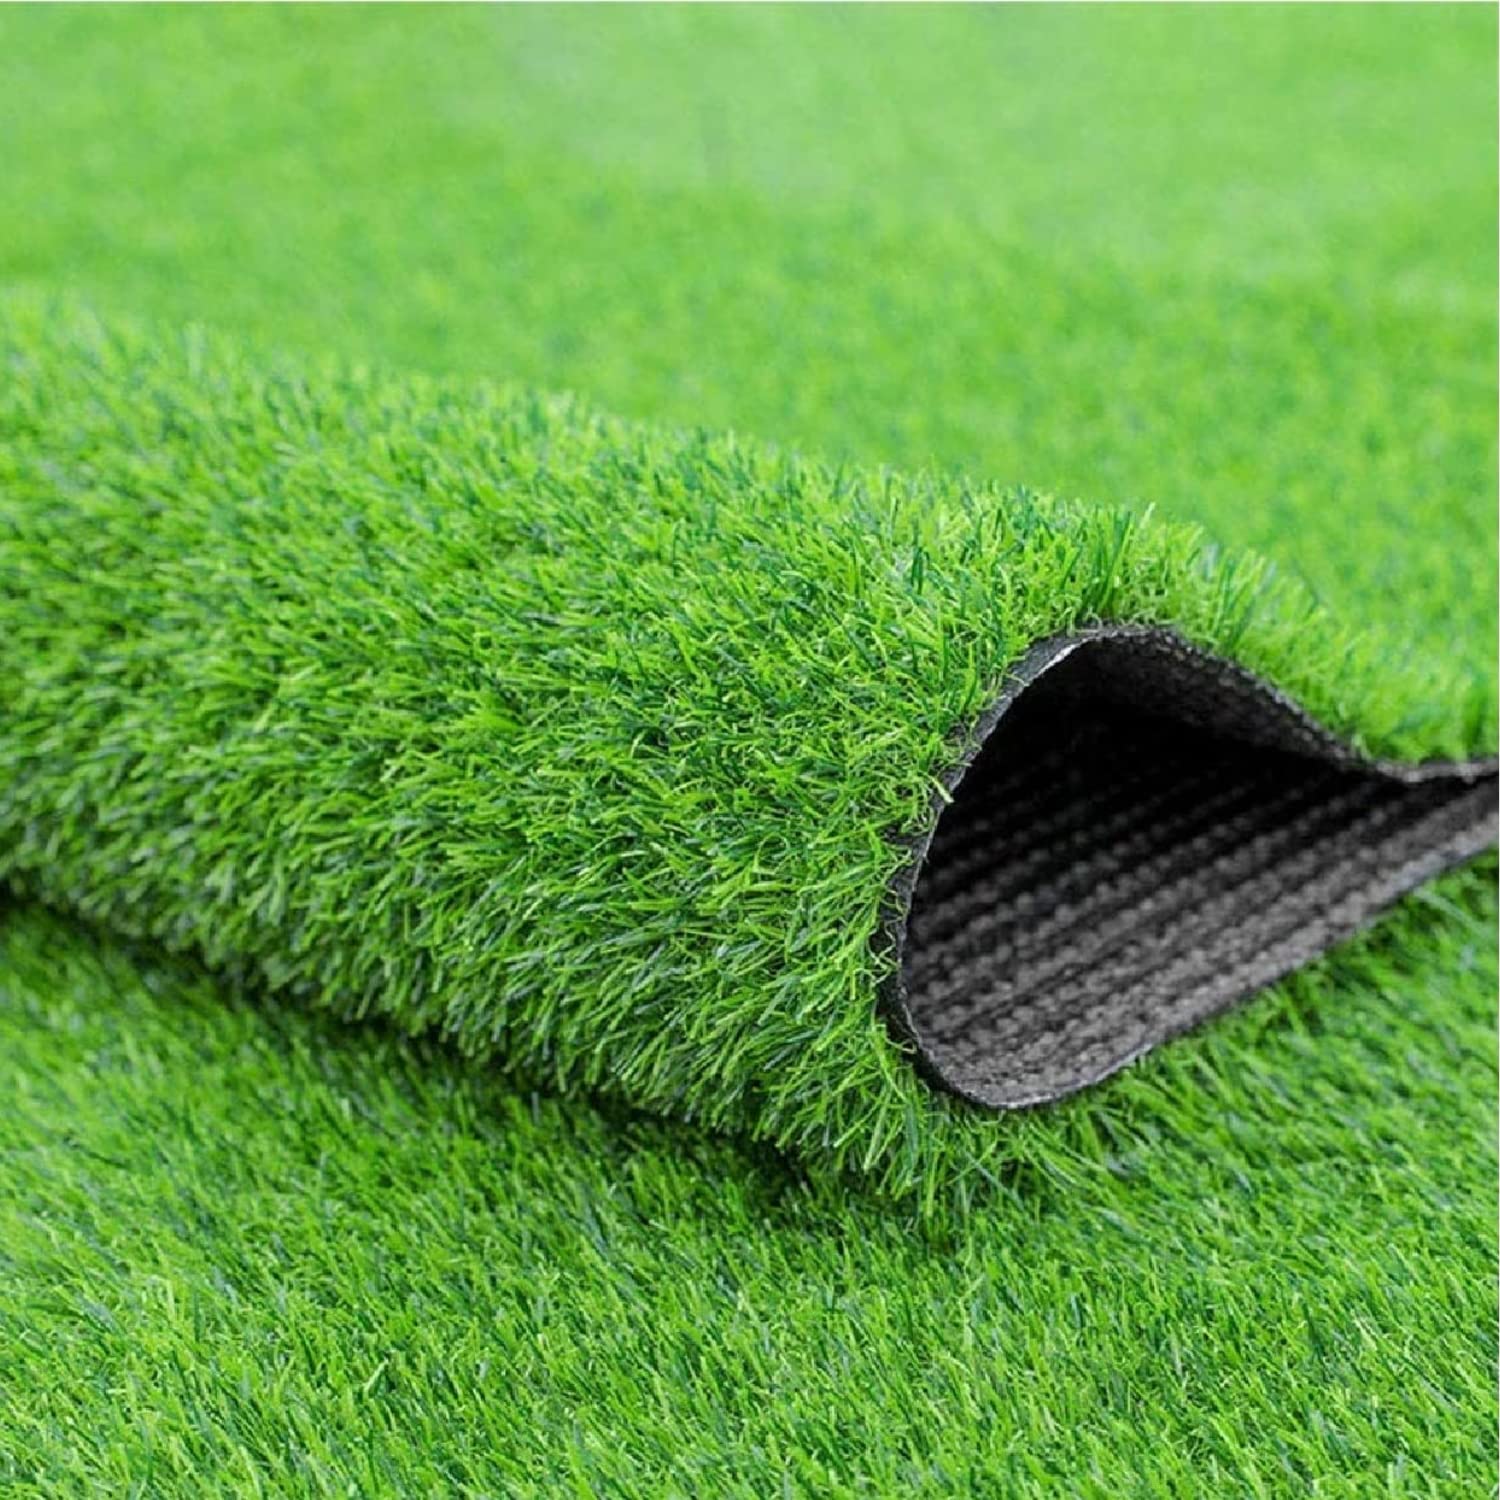 Hug A Plant | Artificial Grass Mat for Outdoors, Balcony, Lawn, Garden, Terrace | 35 MM Thick Grass Doormat, Runner, Carpet for Poolside, Restaurant, Wall, Landscape (Natural Green)…